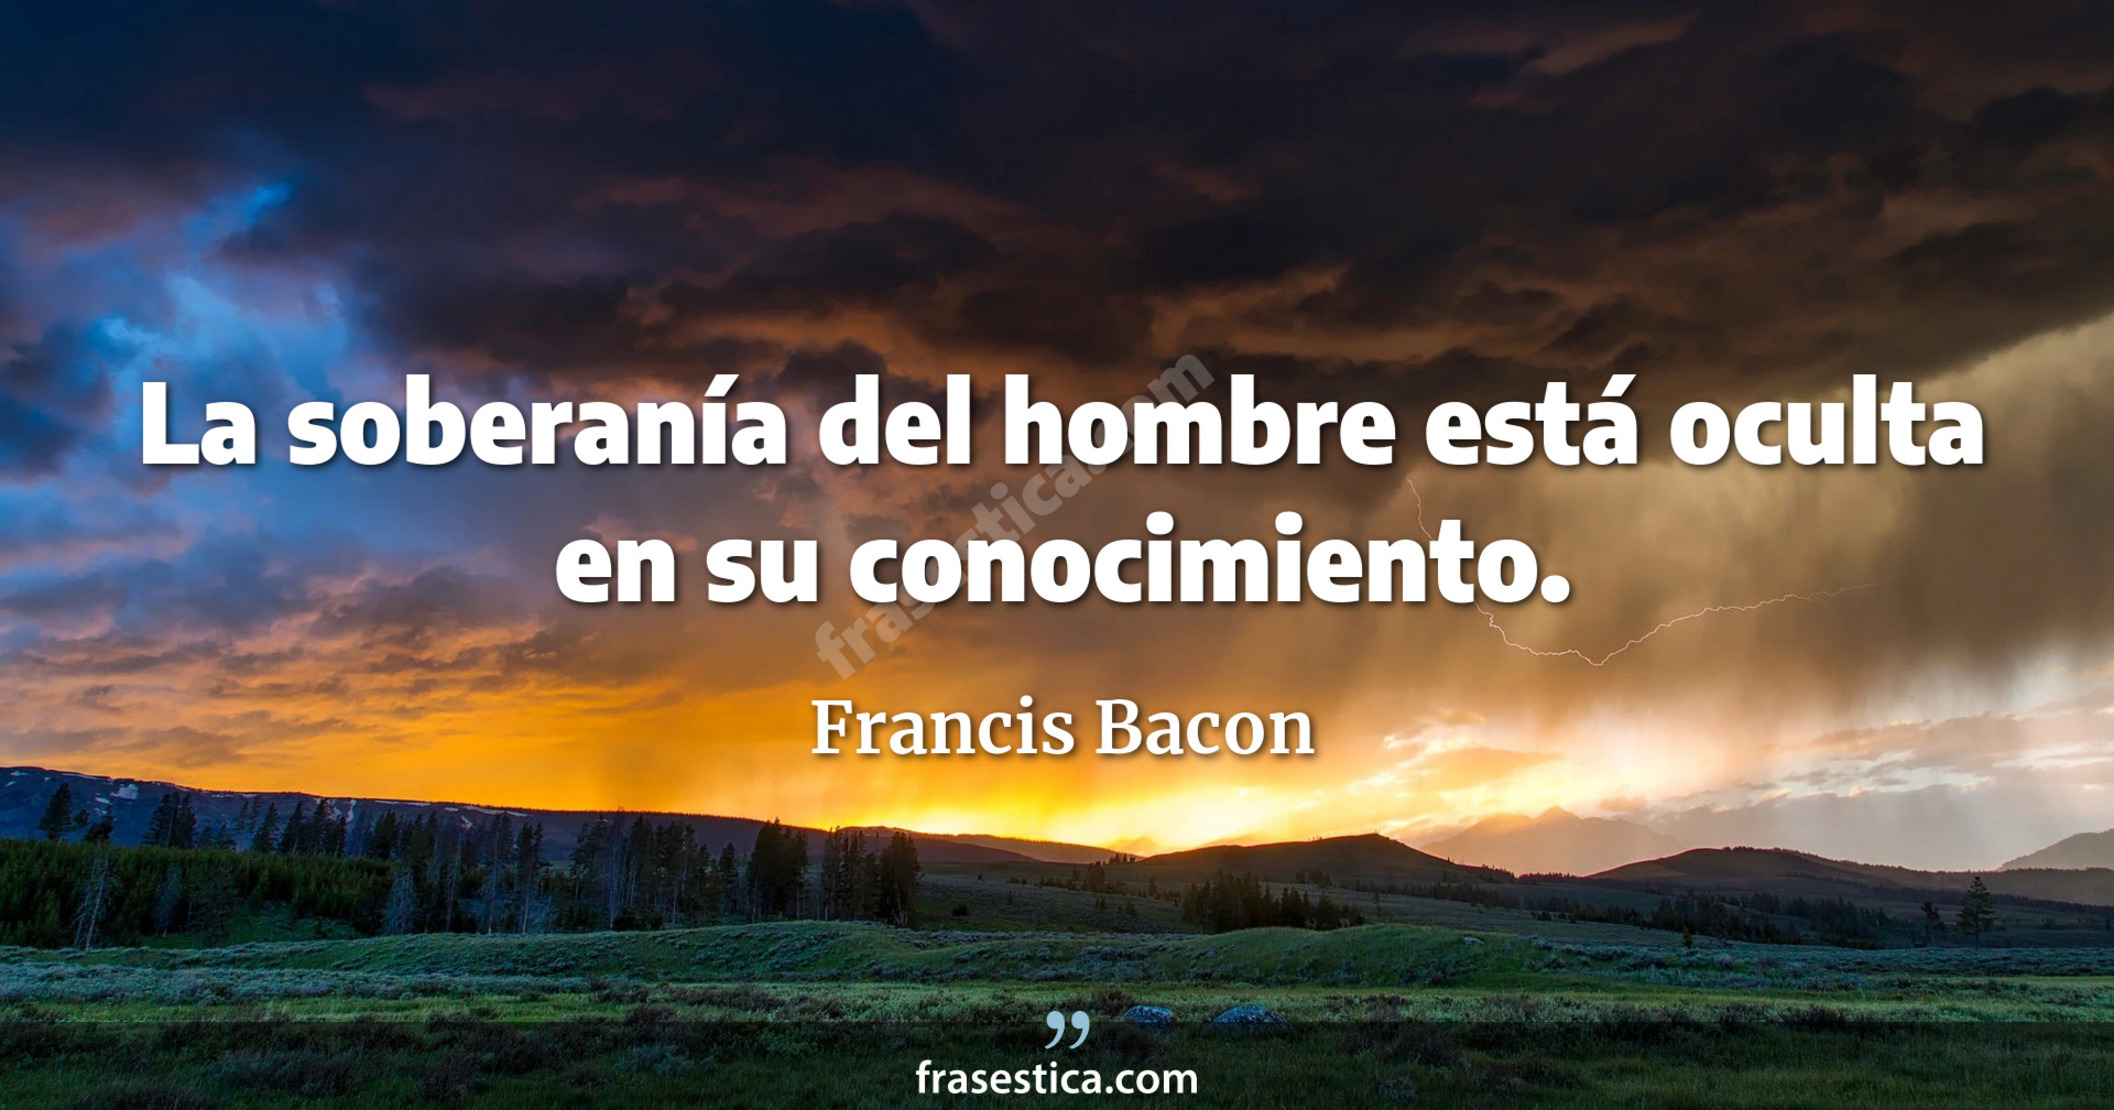 La soberanía del hombre está oculta en su conocimiento. - Francis Bacon